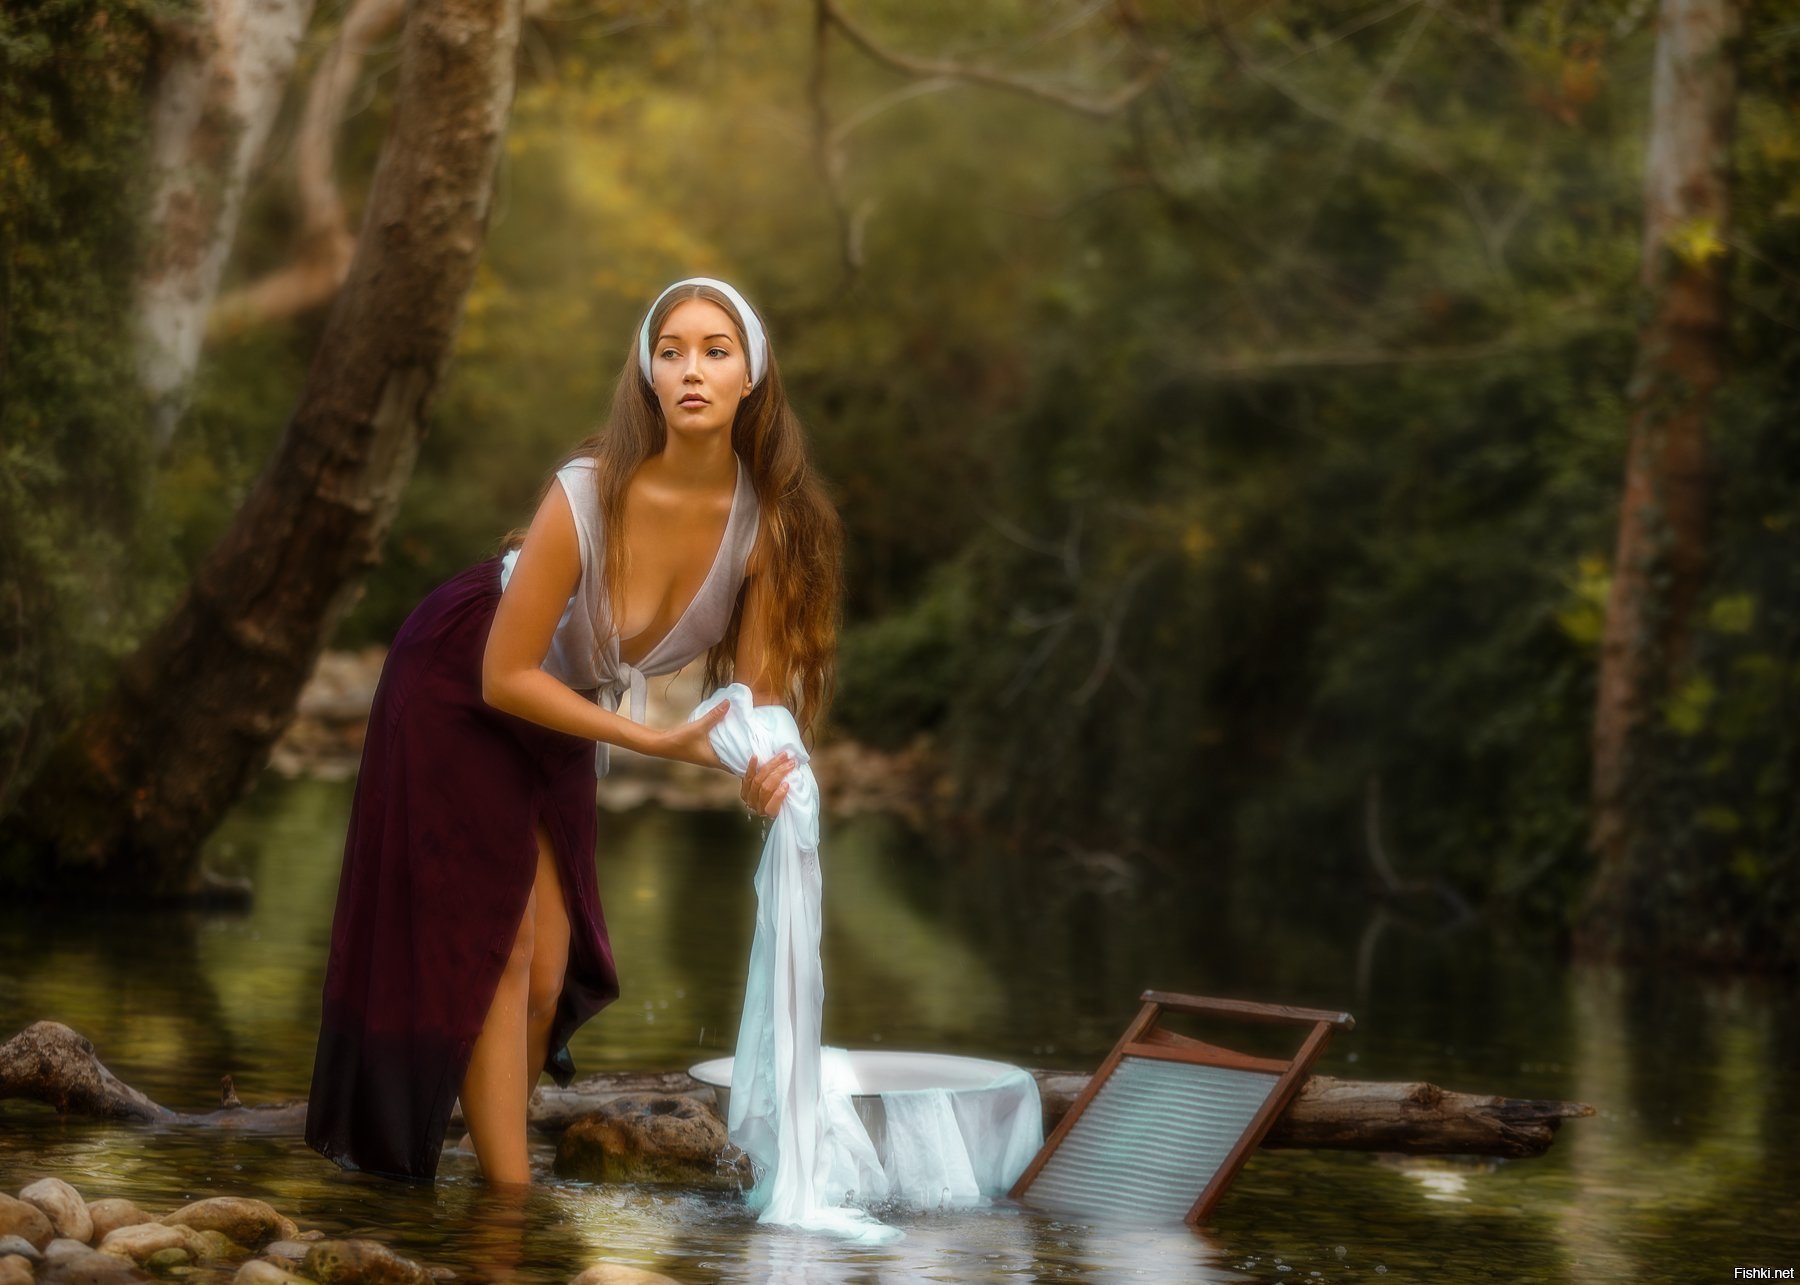 Стирают белье в реке. Фотосессия у реки. Девушка у реки. Художественная фотография. Женщина на природе.